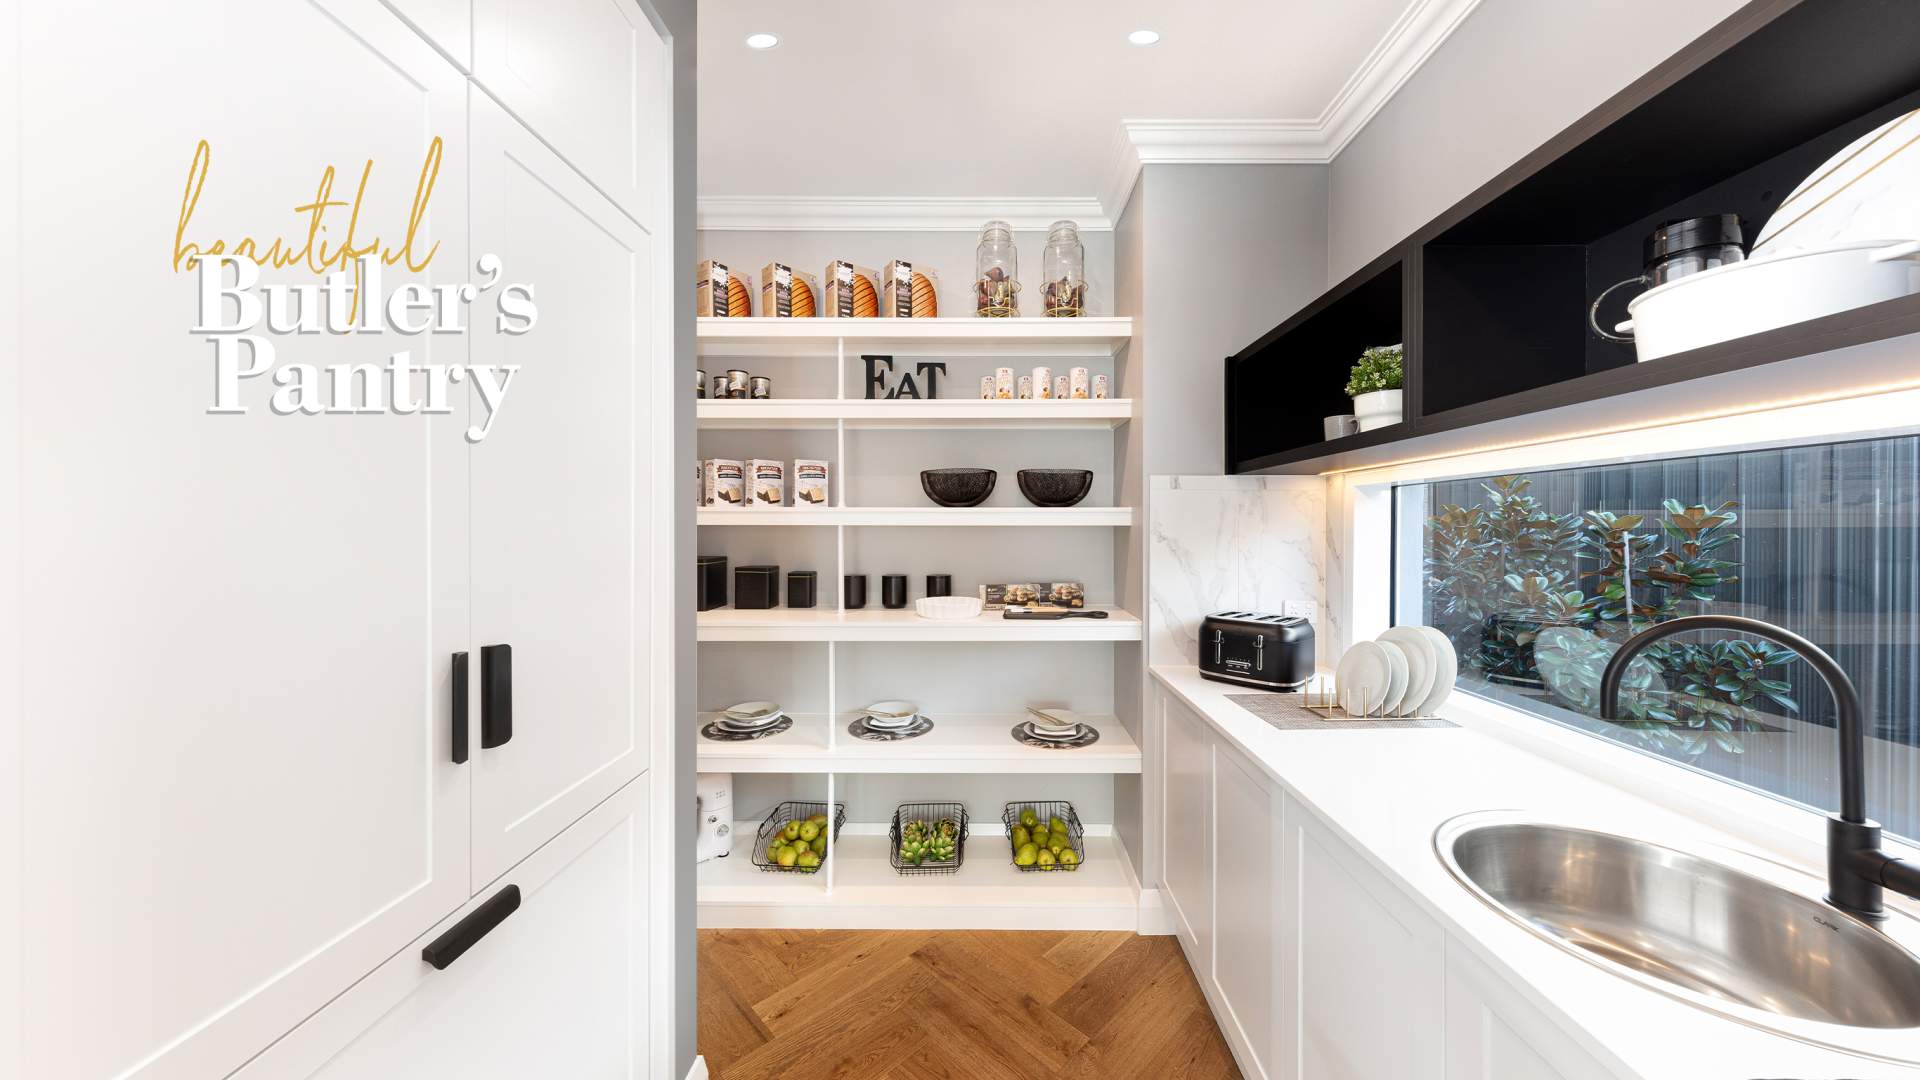 11 Best Butler's Pantry Ideas 2021 - Stylish Butler's Kitchen Designs